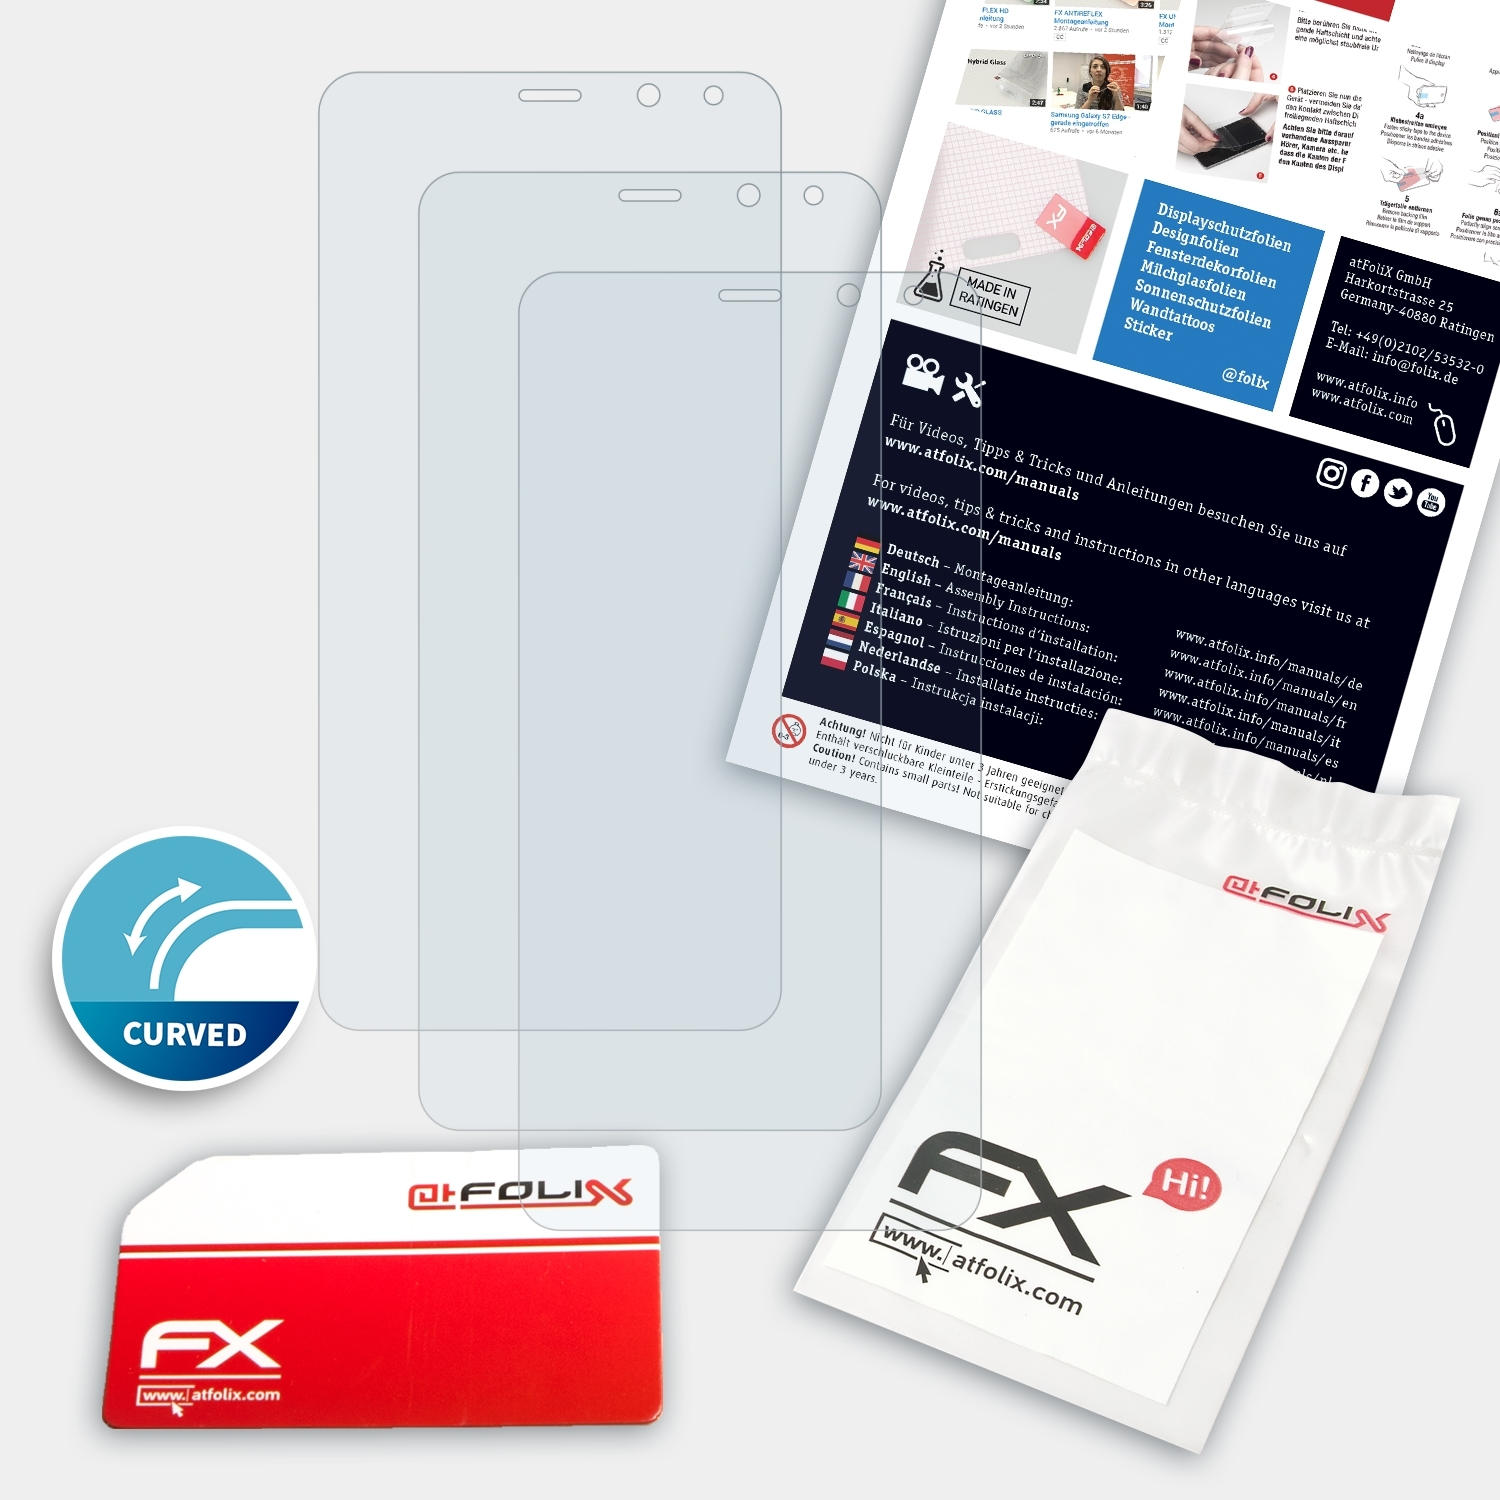 ATFOLIX 3x Gooweel M5 FX-ActiFleX Plus) Displayschutz(für